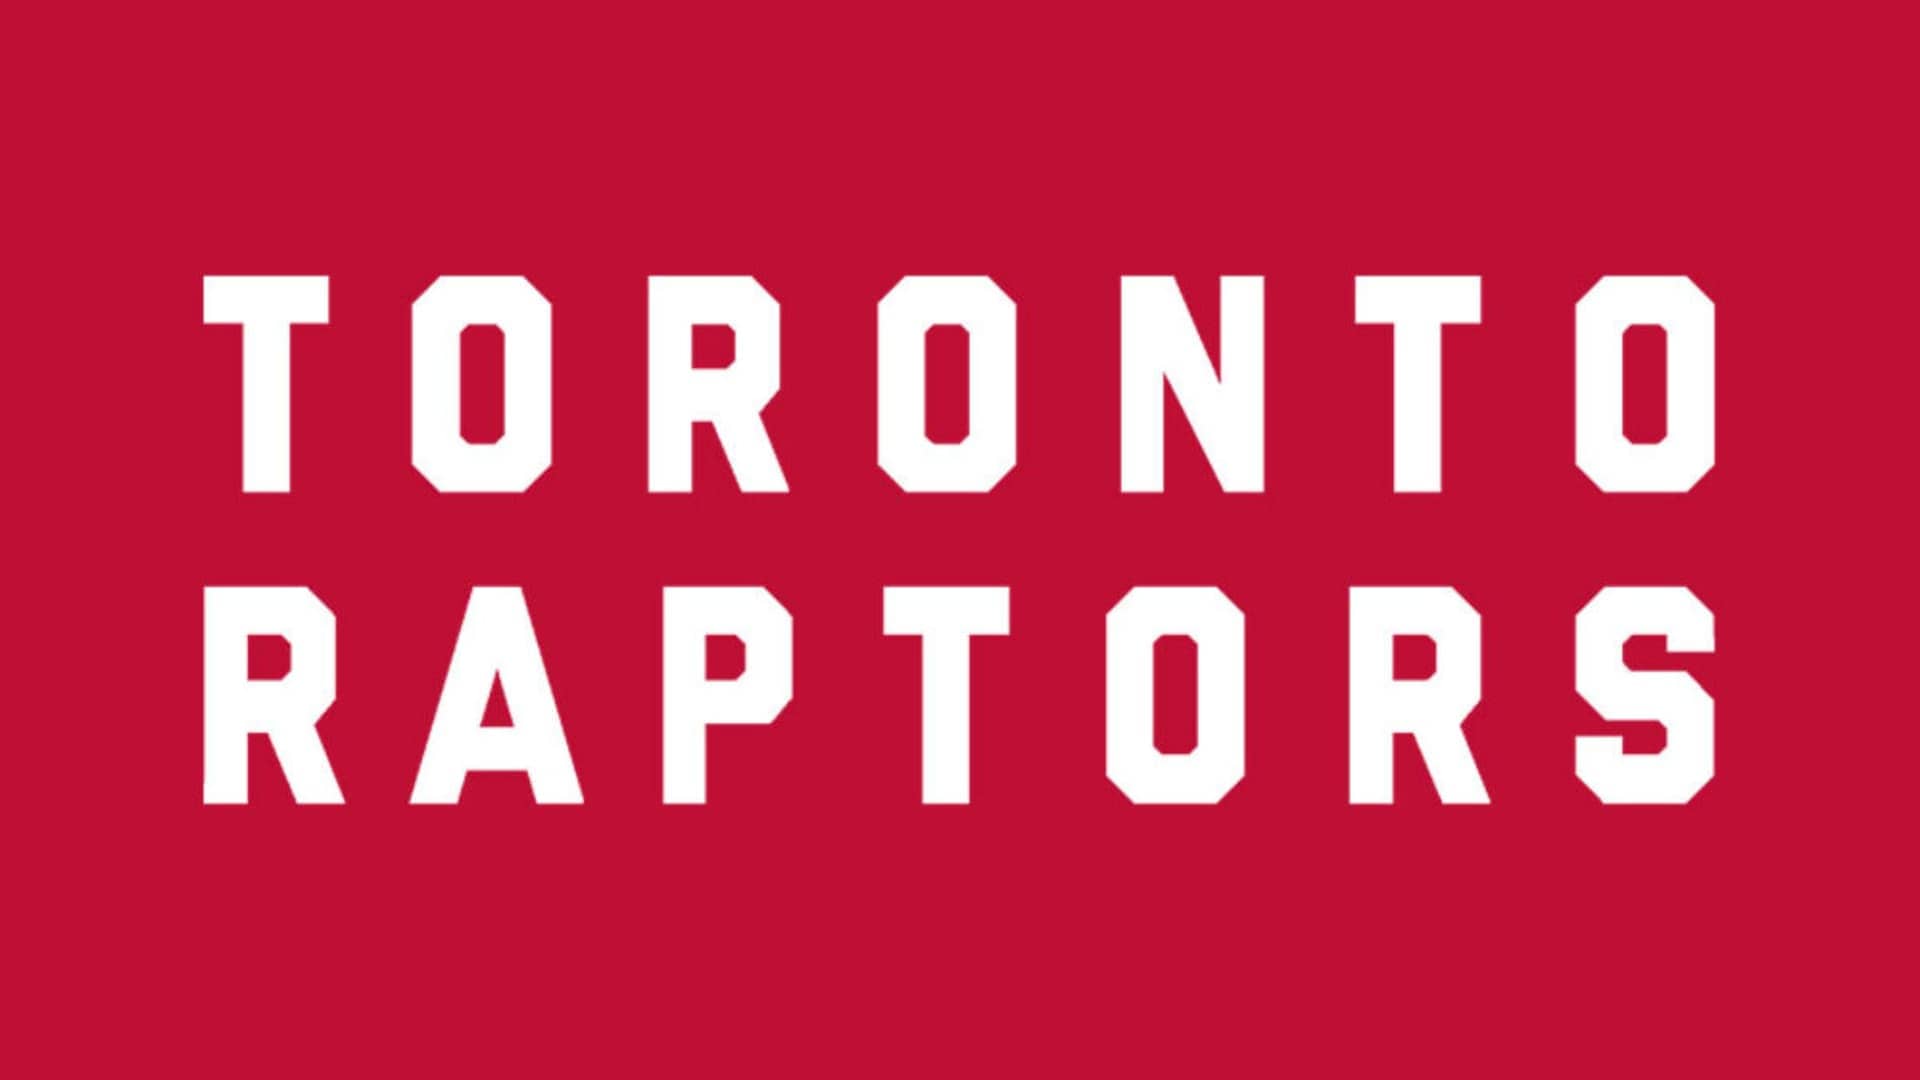 Toronto Raptors - NBA teams in alphabetical order